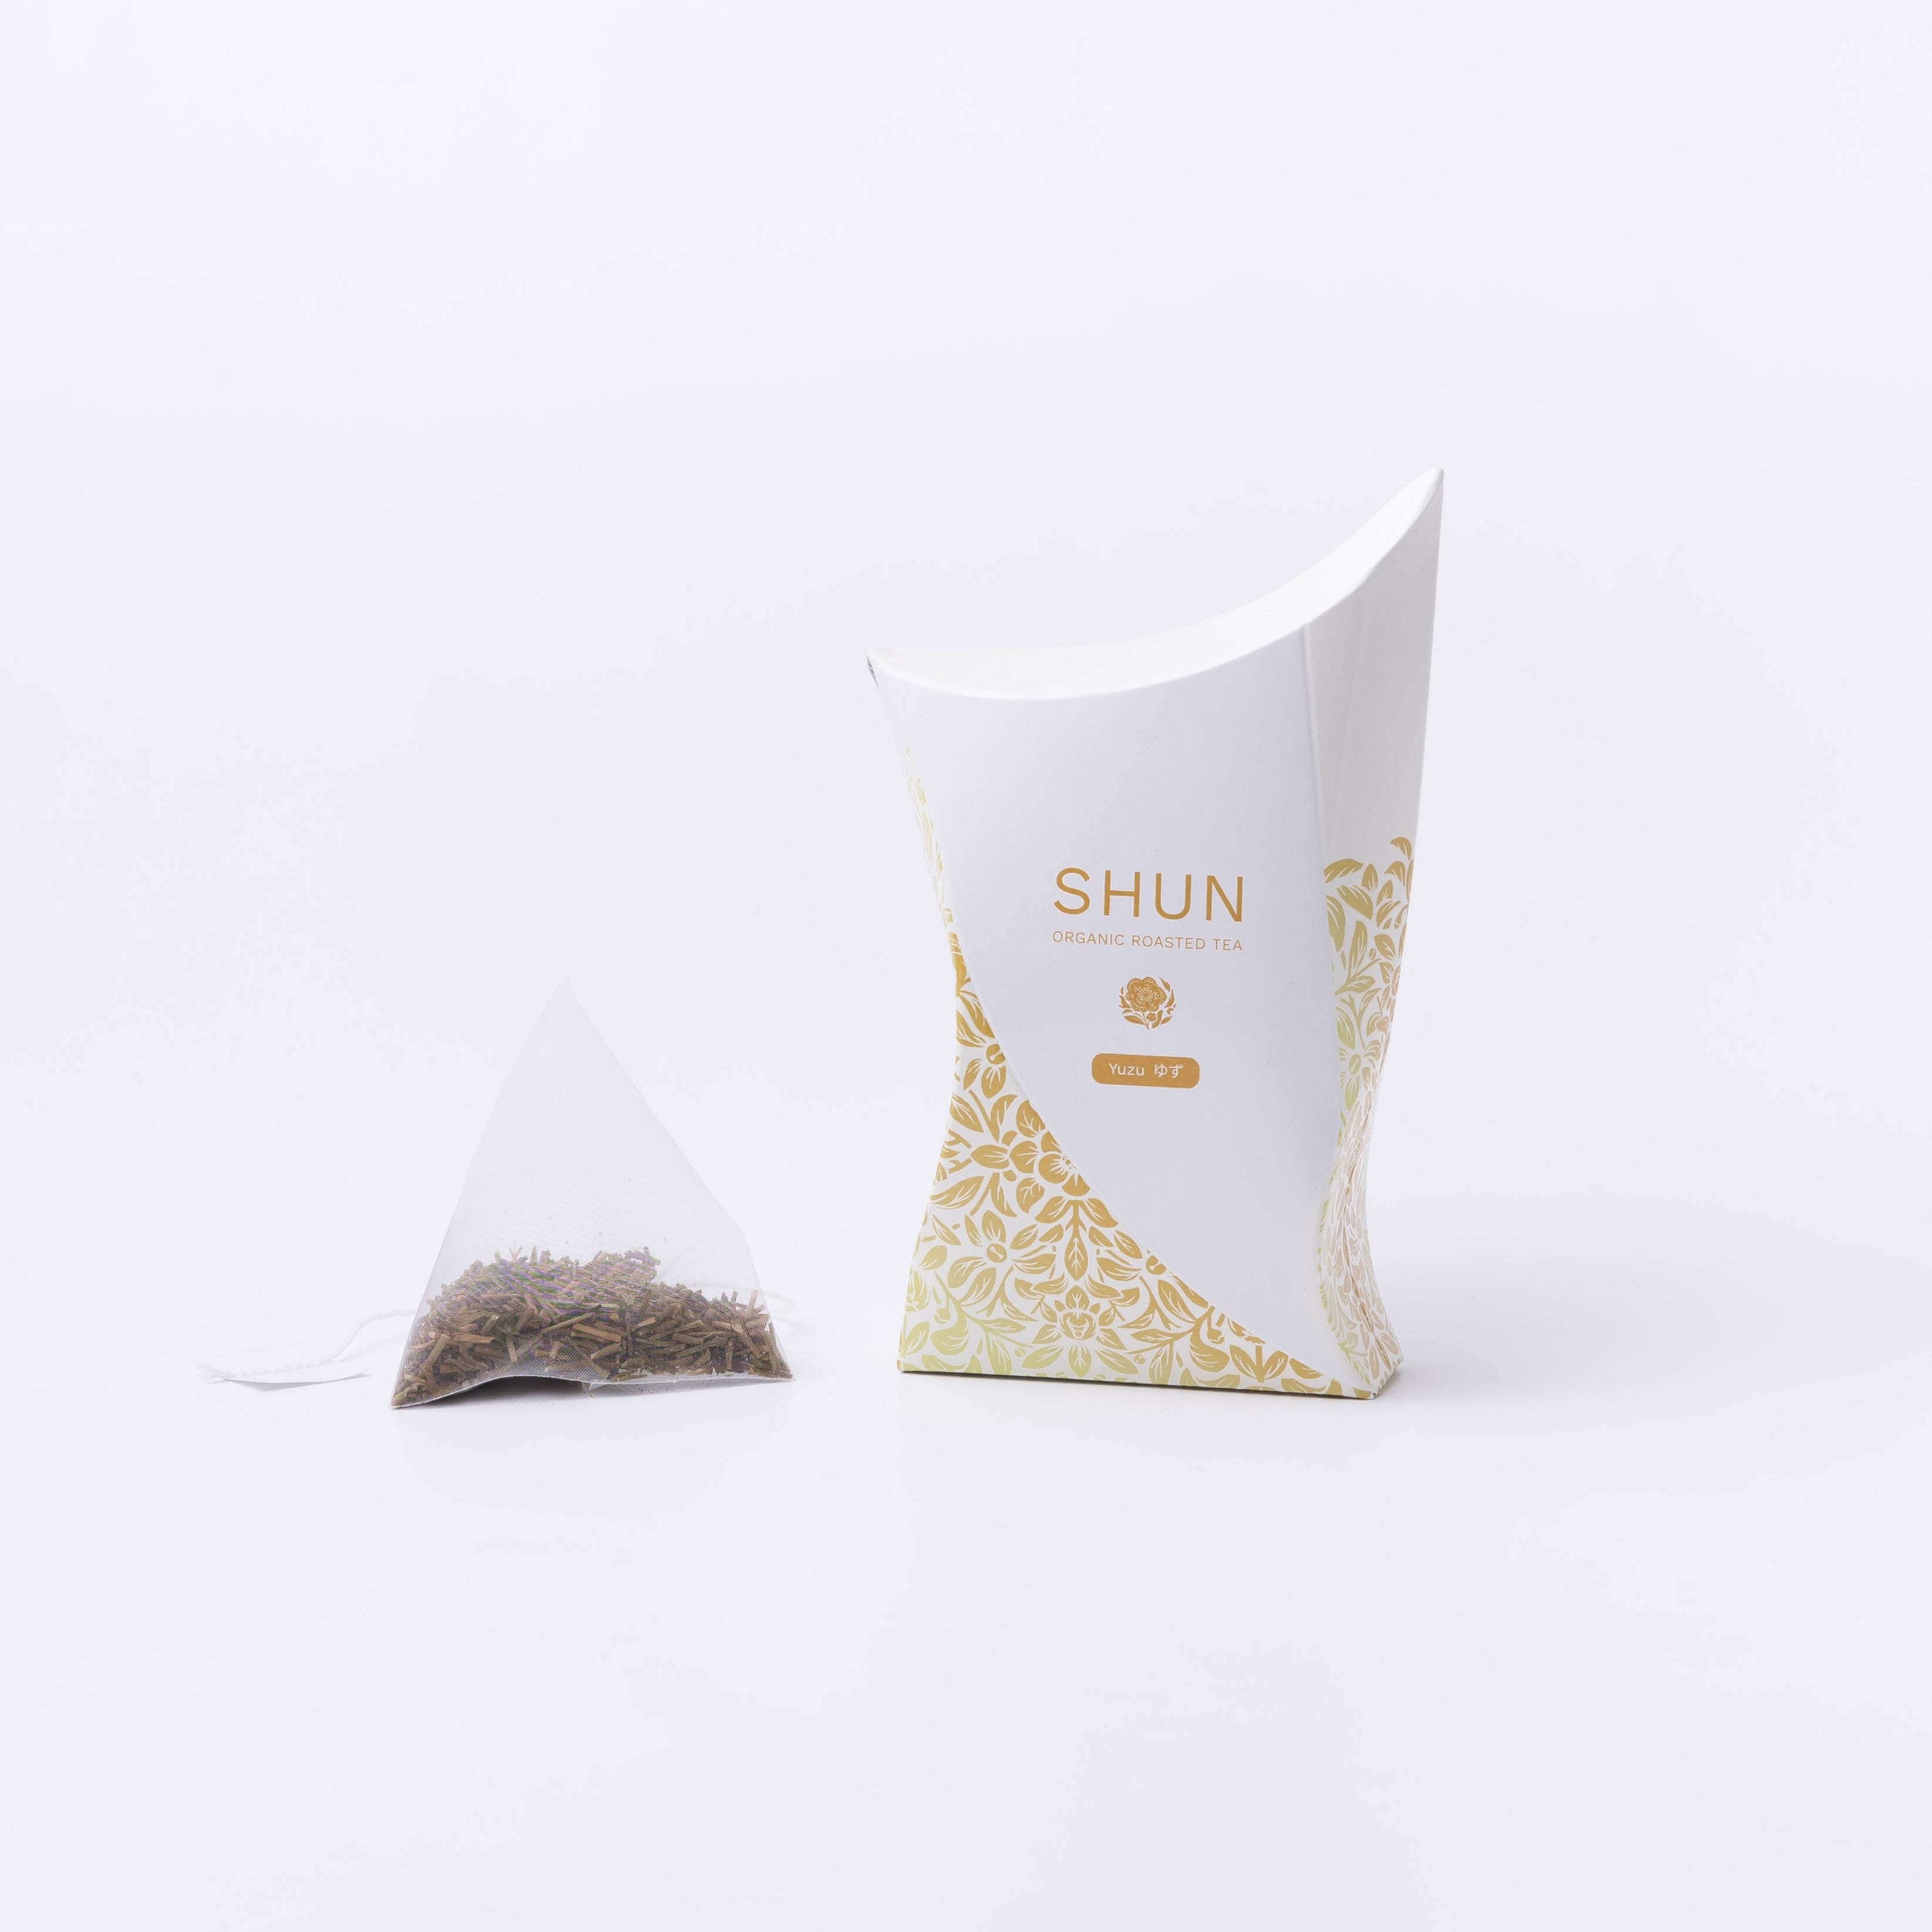 金棒茶「SHUN - 柚子ブレンド -」 -箱-